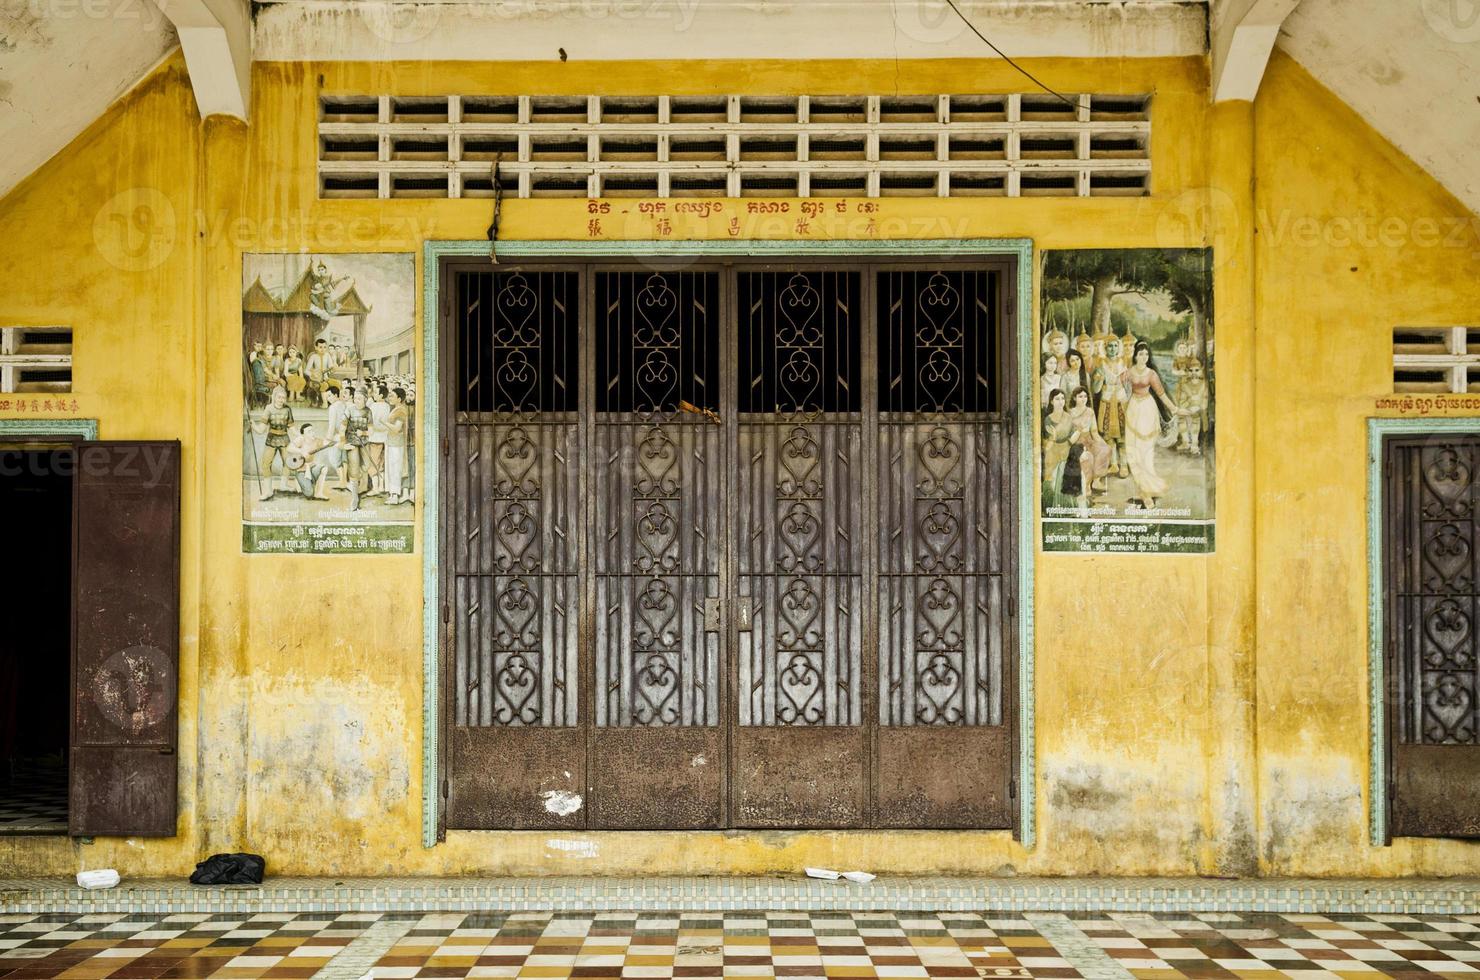 fransk kolonialhusbyggnad exteriördetalj i Battambang gamla stad Kambodja foto